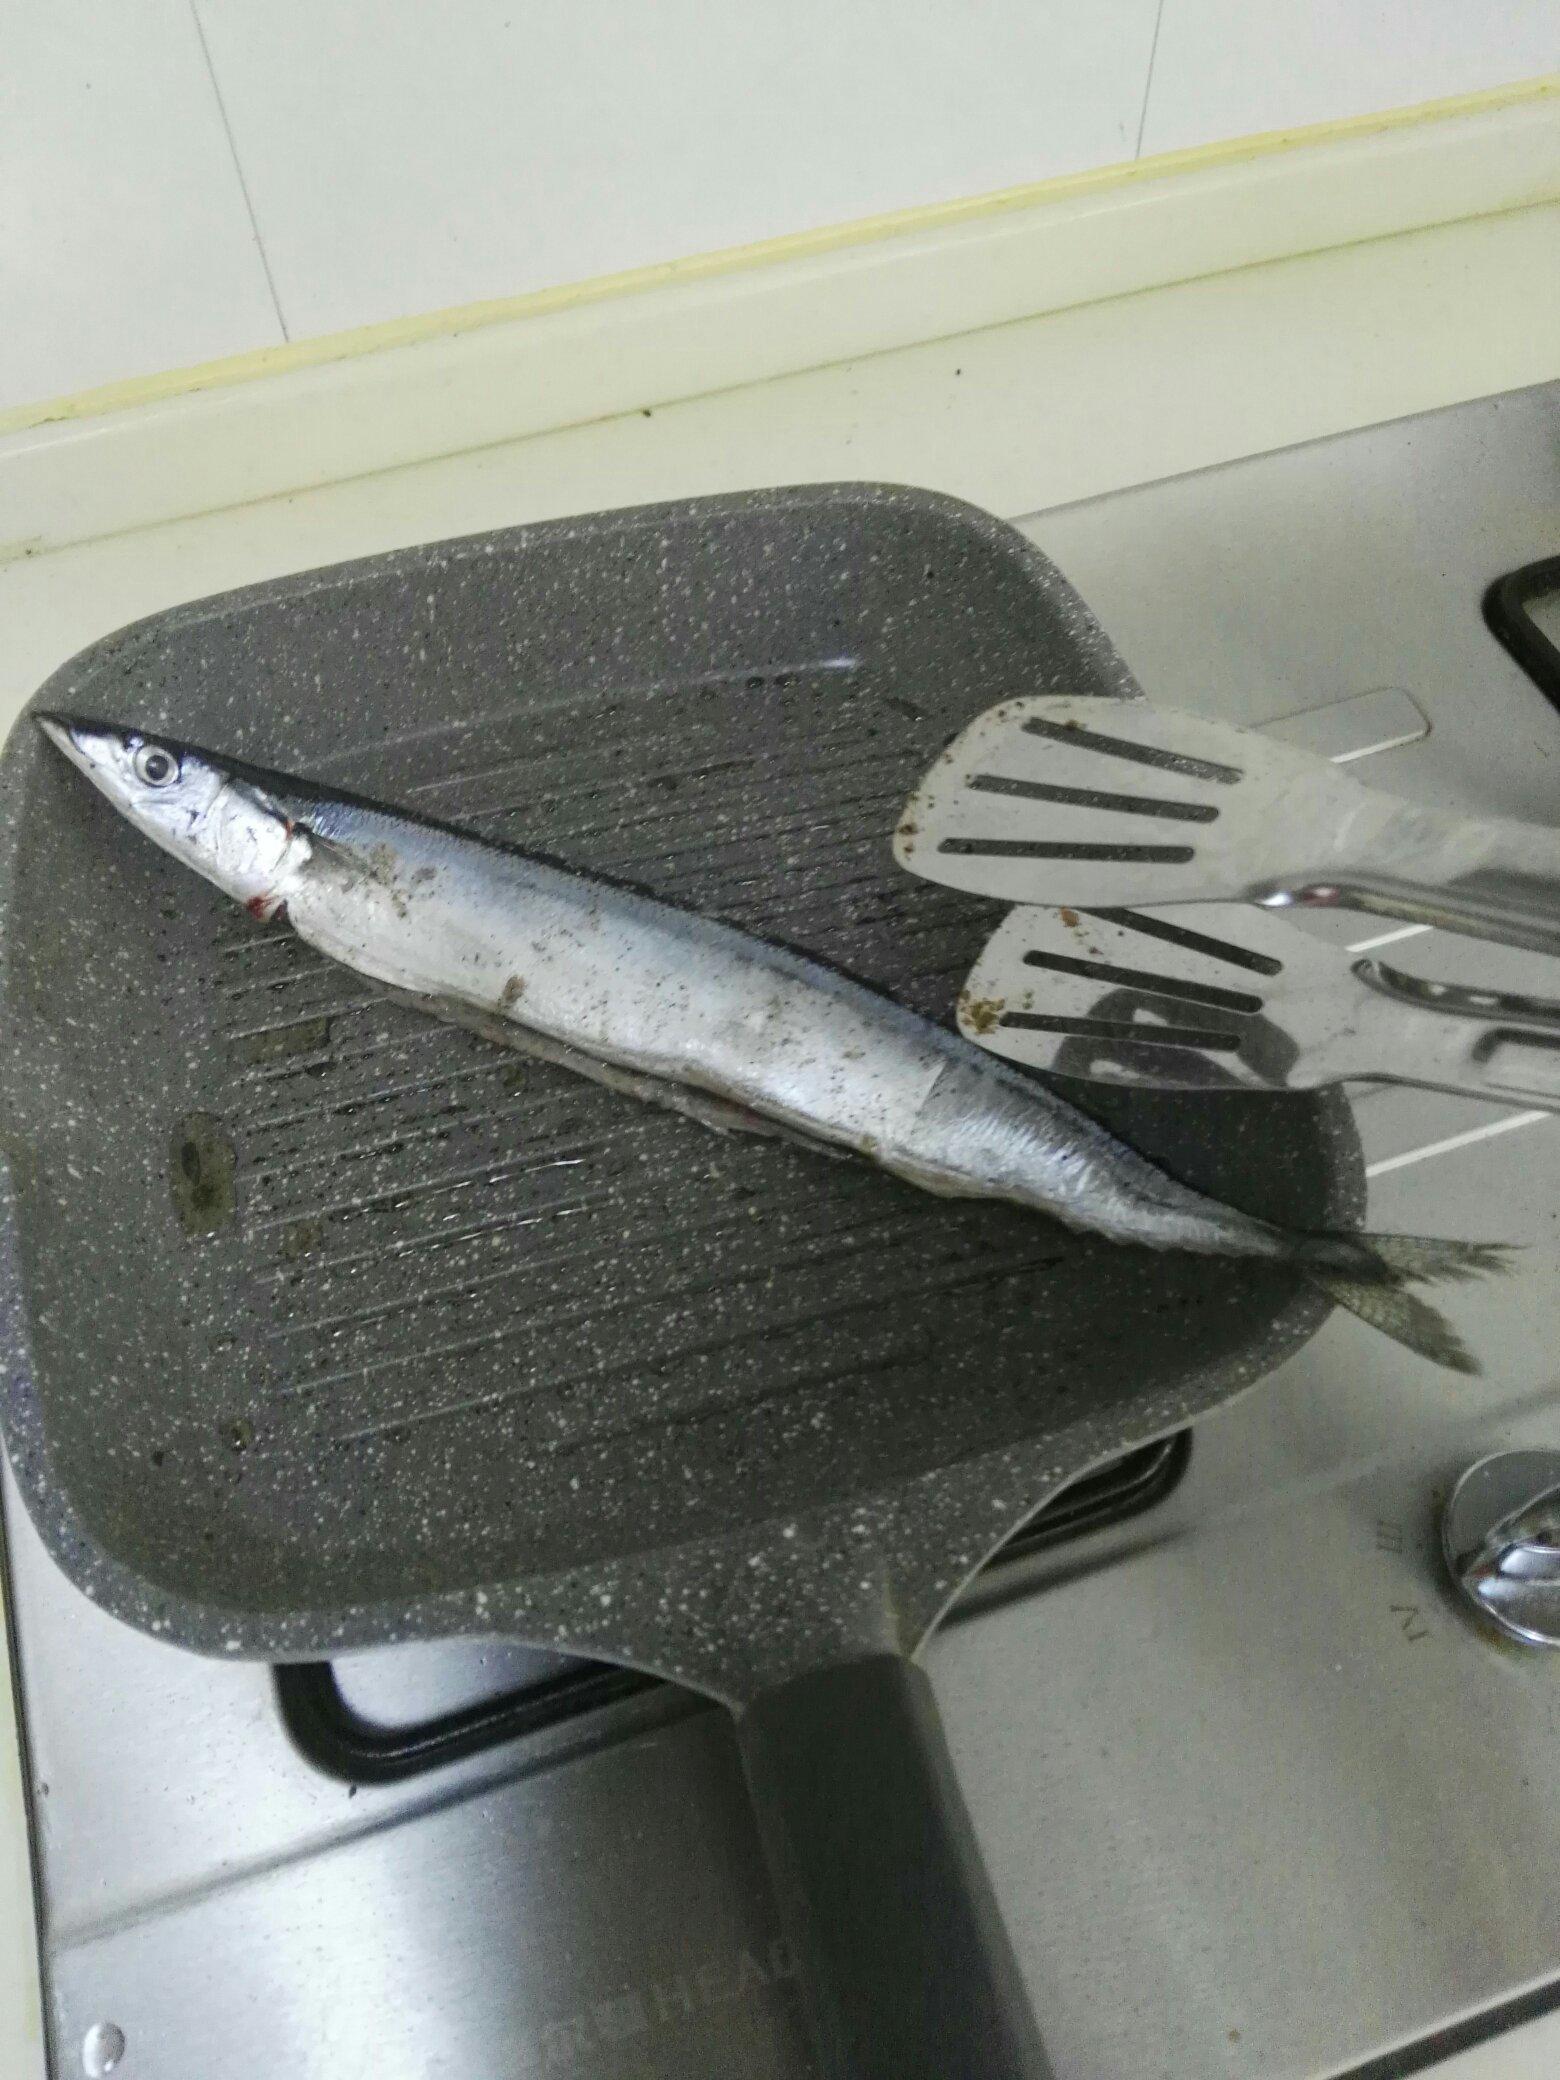 煎秋刀魚的做法 步骤3